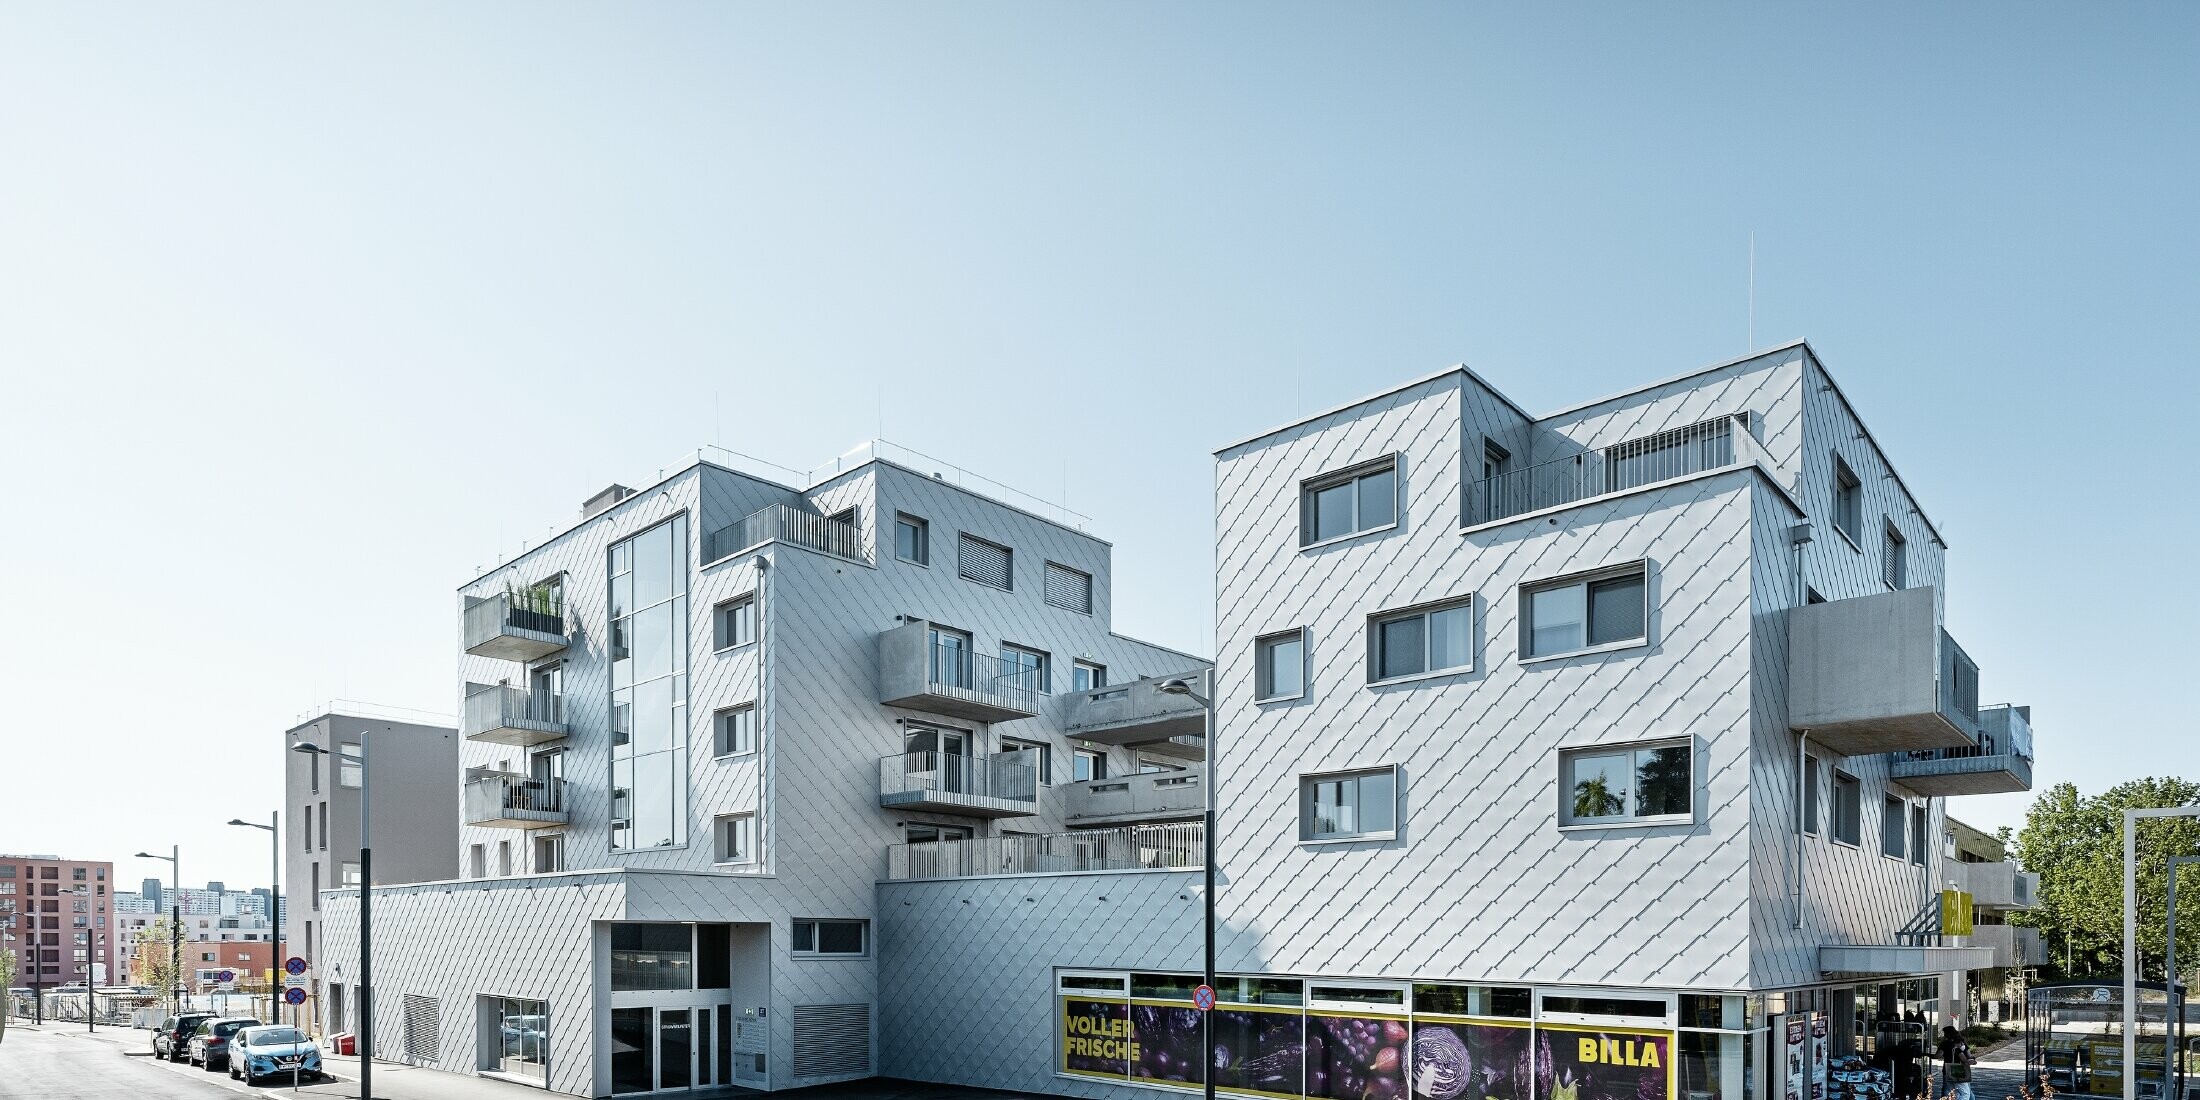 Stanovanjska naselja z ravnimi strehami in fasadnimi rombi 44 x 44 PREFA na fasadi v kovinsko srebrni barvi